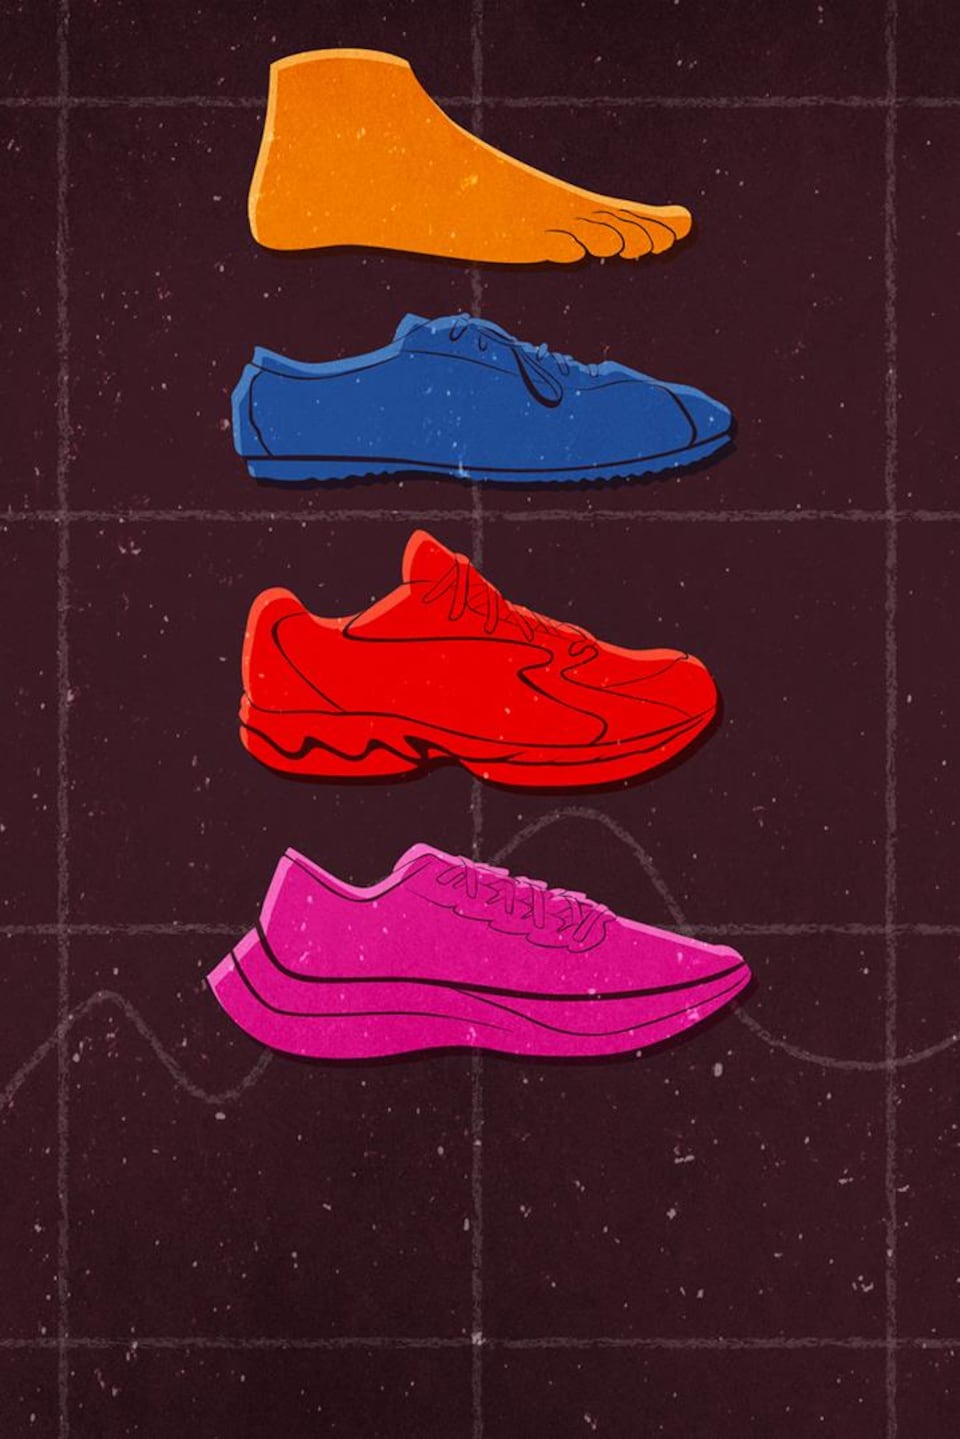 Illustration d'un pied, d'un soulier minimaliste, d'un soulier des années 90 ainsi que d'un soulier maximaliste.